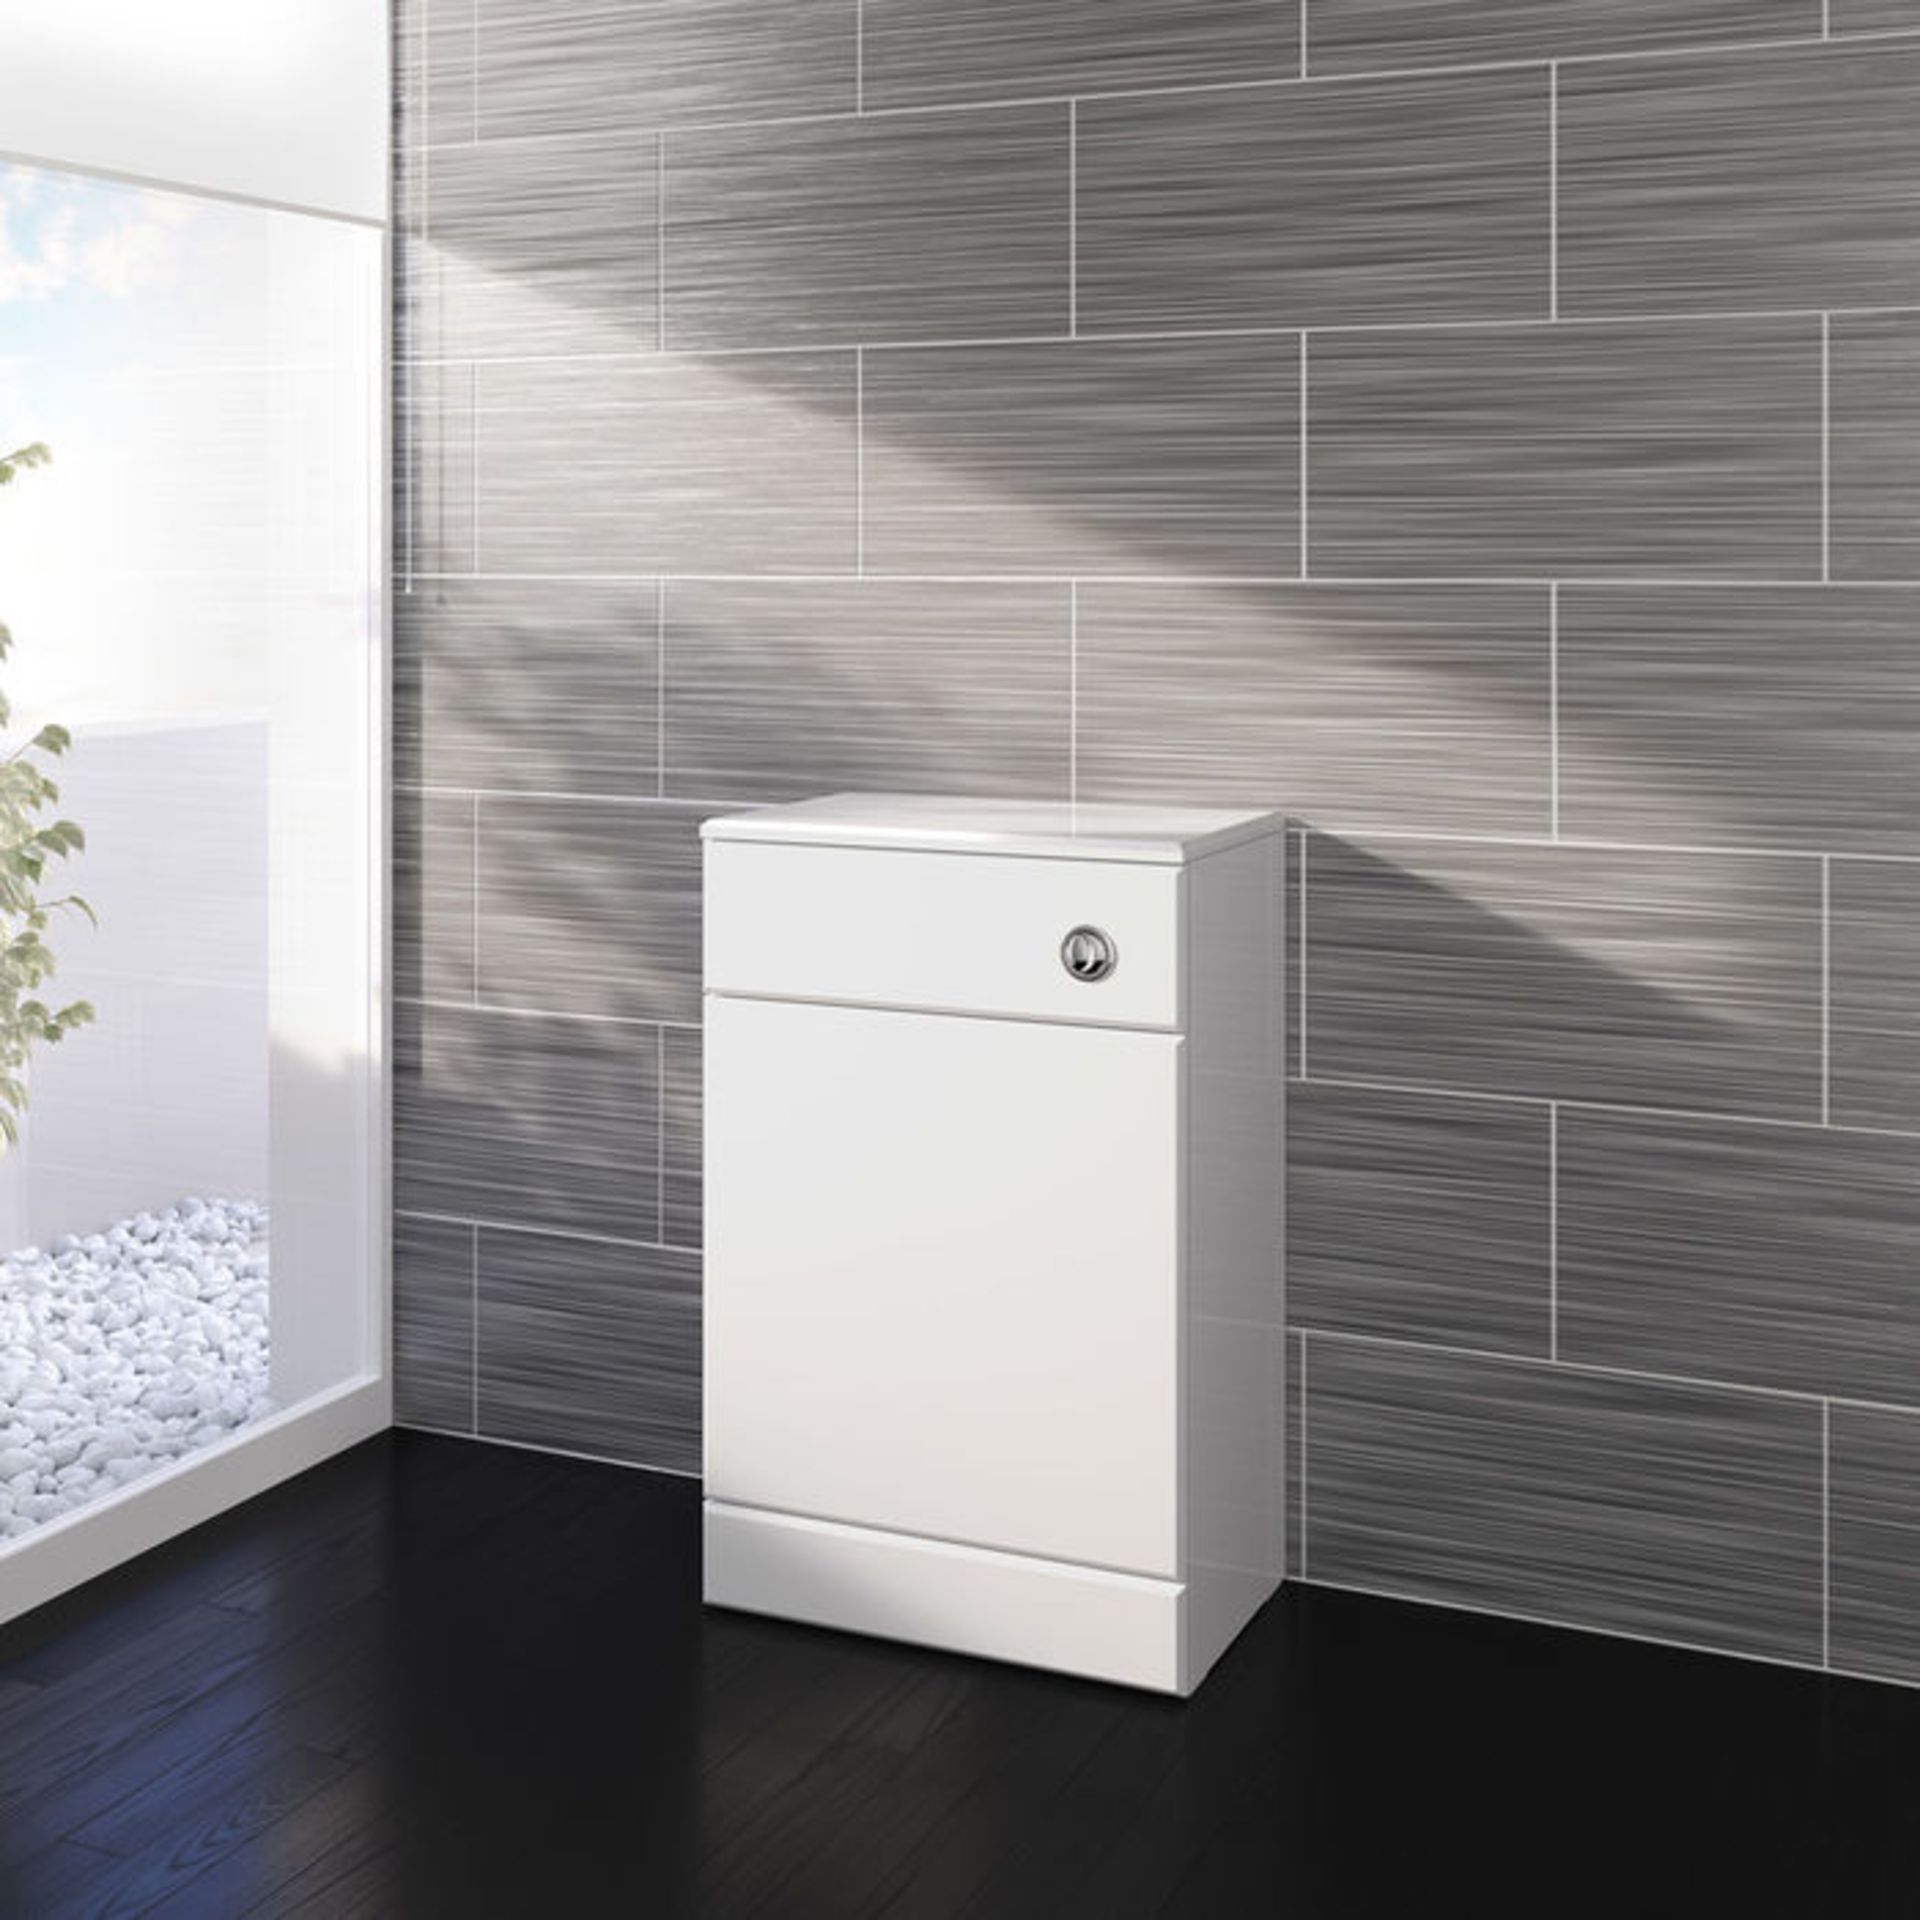 (AL289) 500x300mm Quartz Gloss White Back To Wall Toilet Unit. RRP £143.99. Pristine gloss white - Image 3 of 5